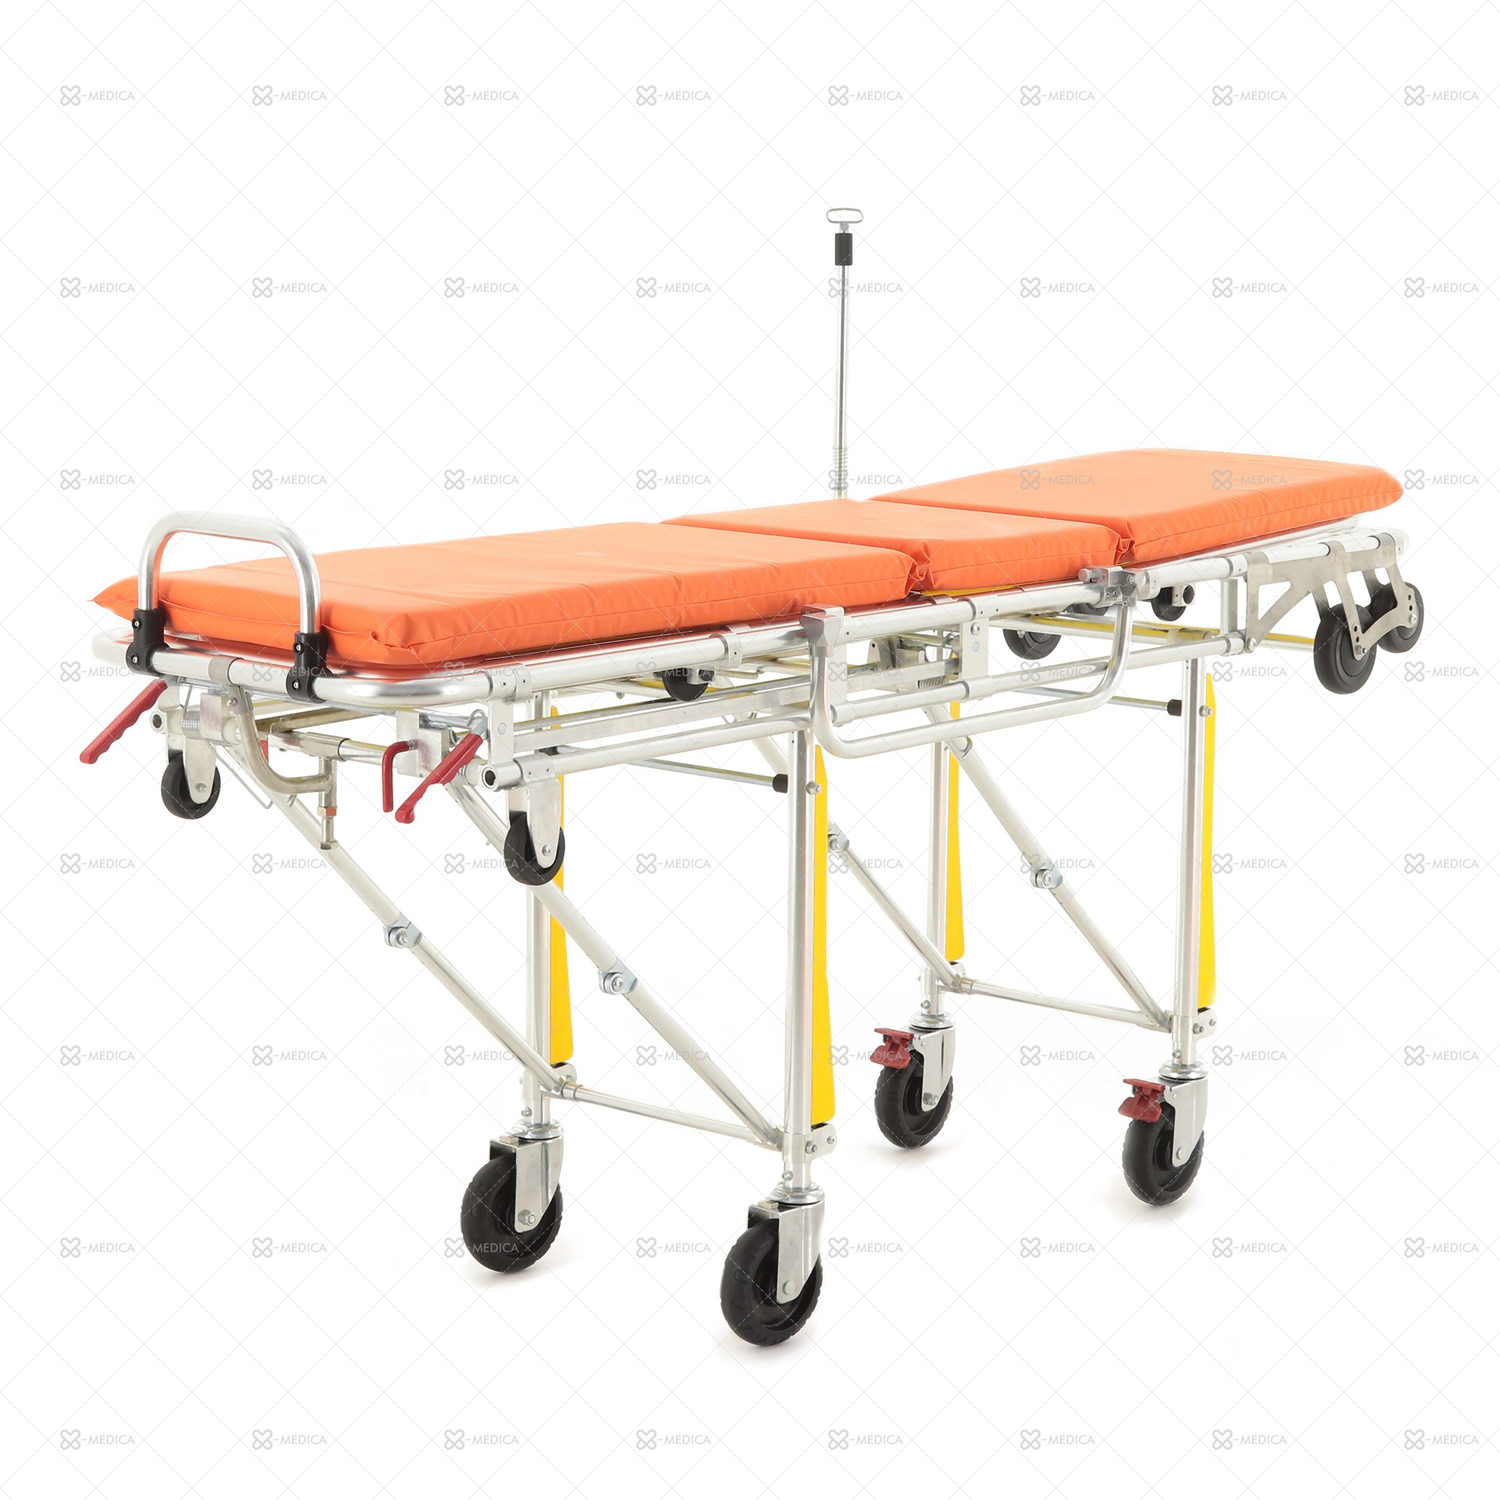 Каталка для автомобилей скорой медицинской помощи Med-Mos ММ-А3 СП-1НФ со съемными носилками